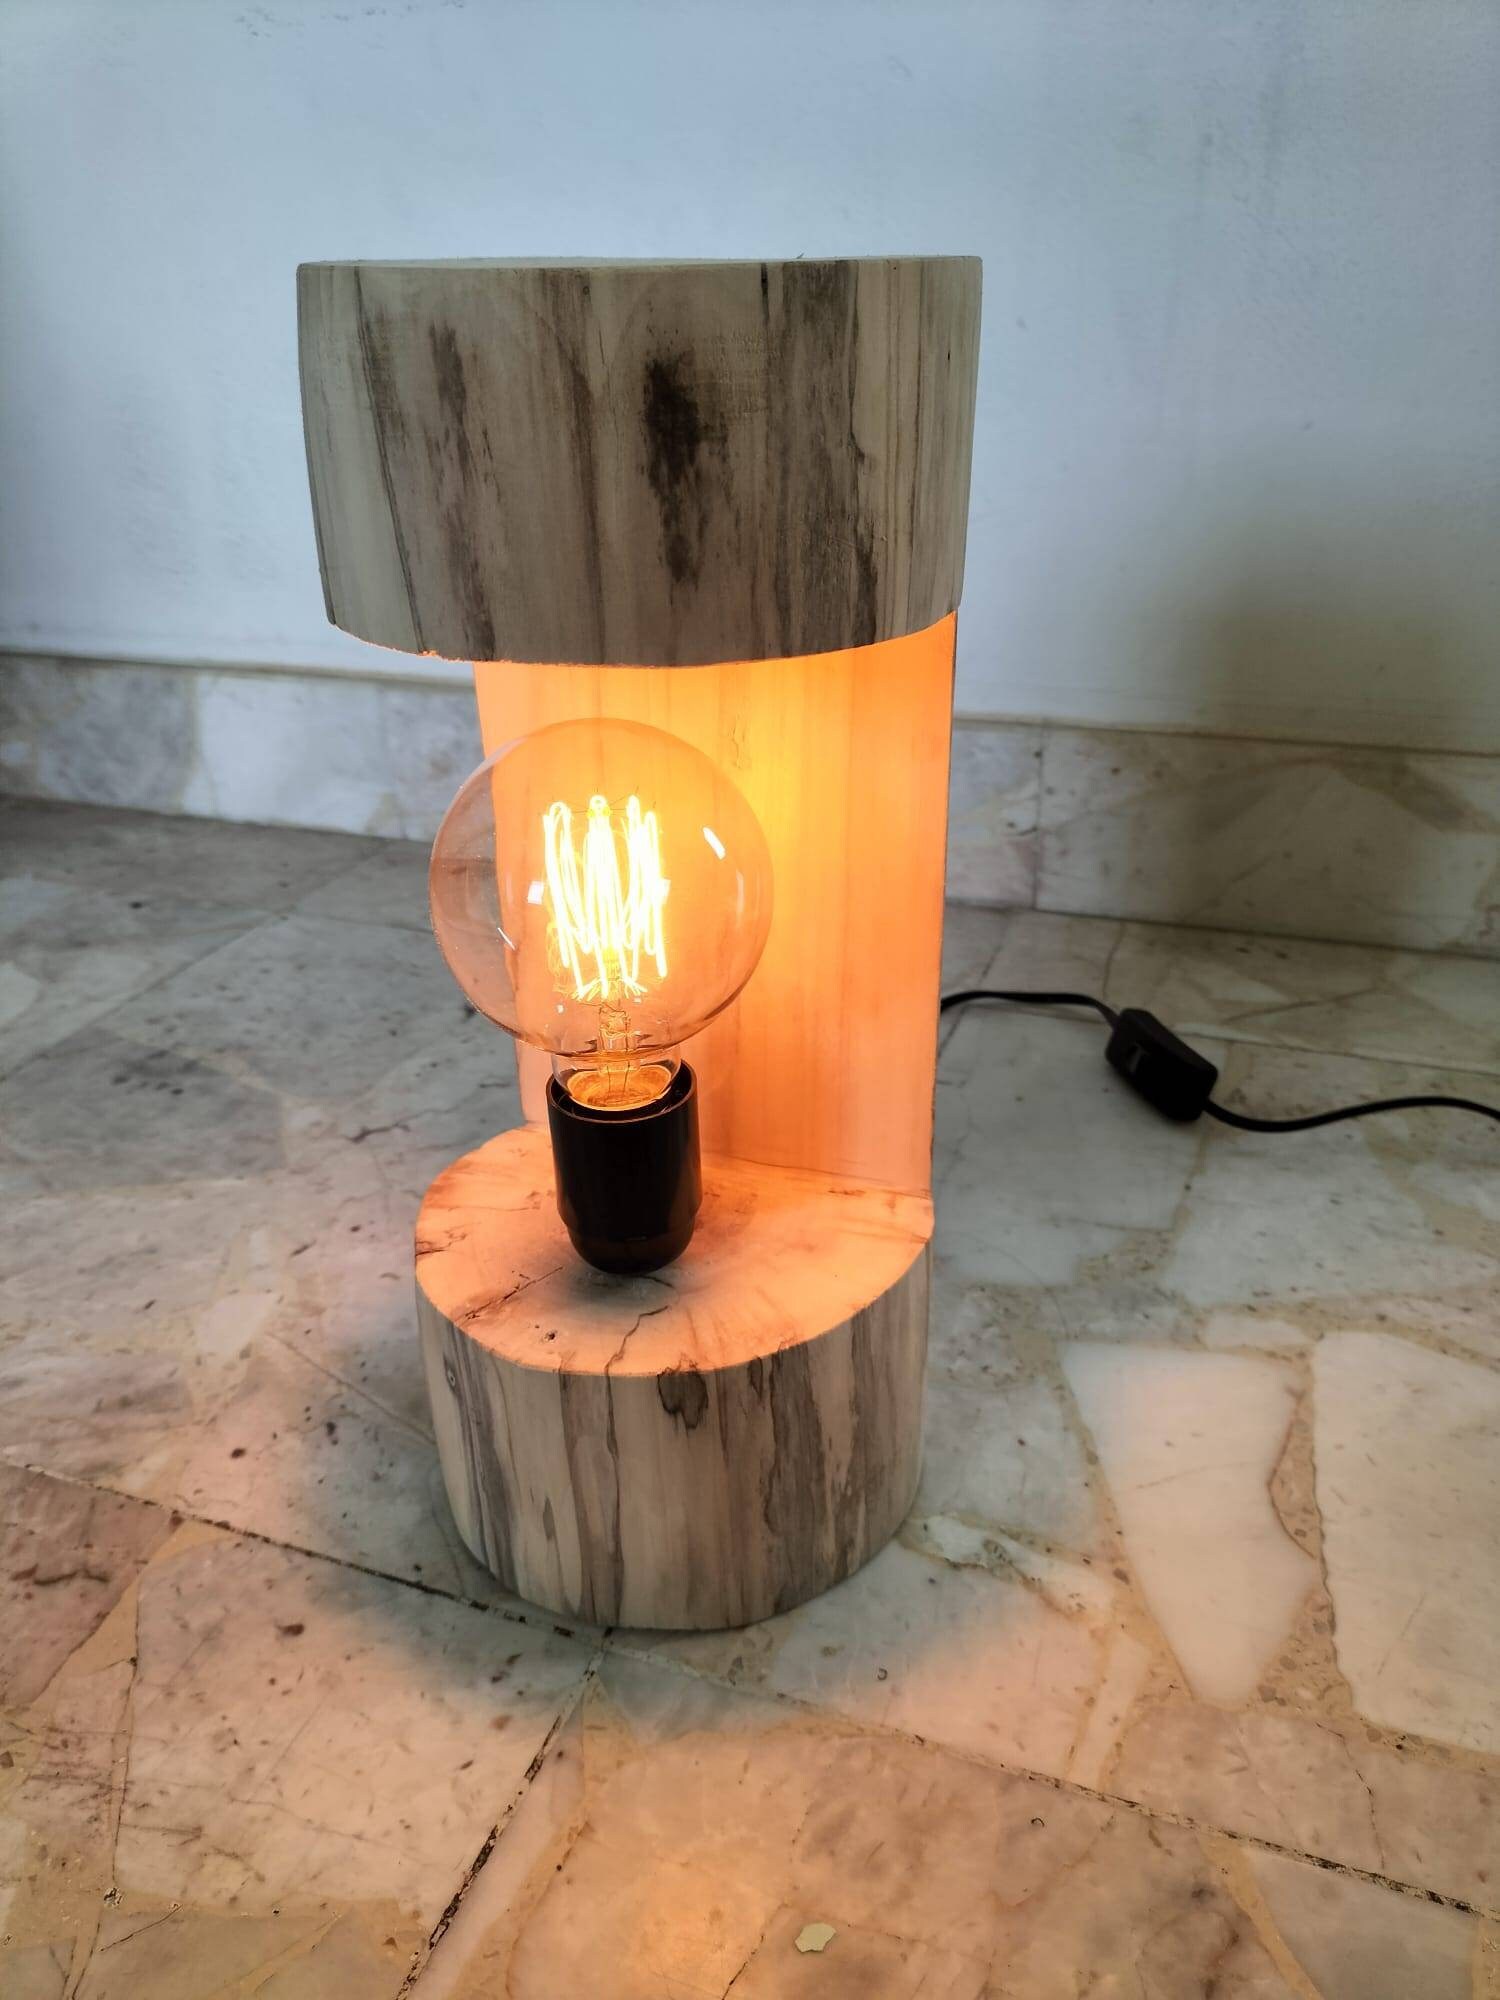 Lampe de chevet en bois flotté naturel , lampe contemporaine, lampe  artisanale, abat-jour en bois, abat-jour fait main -  France